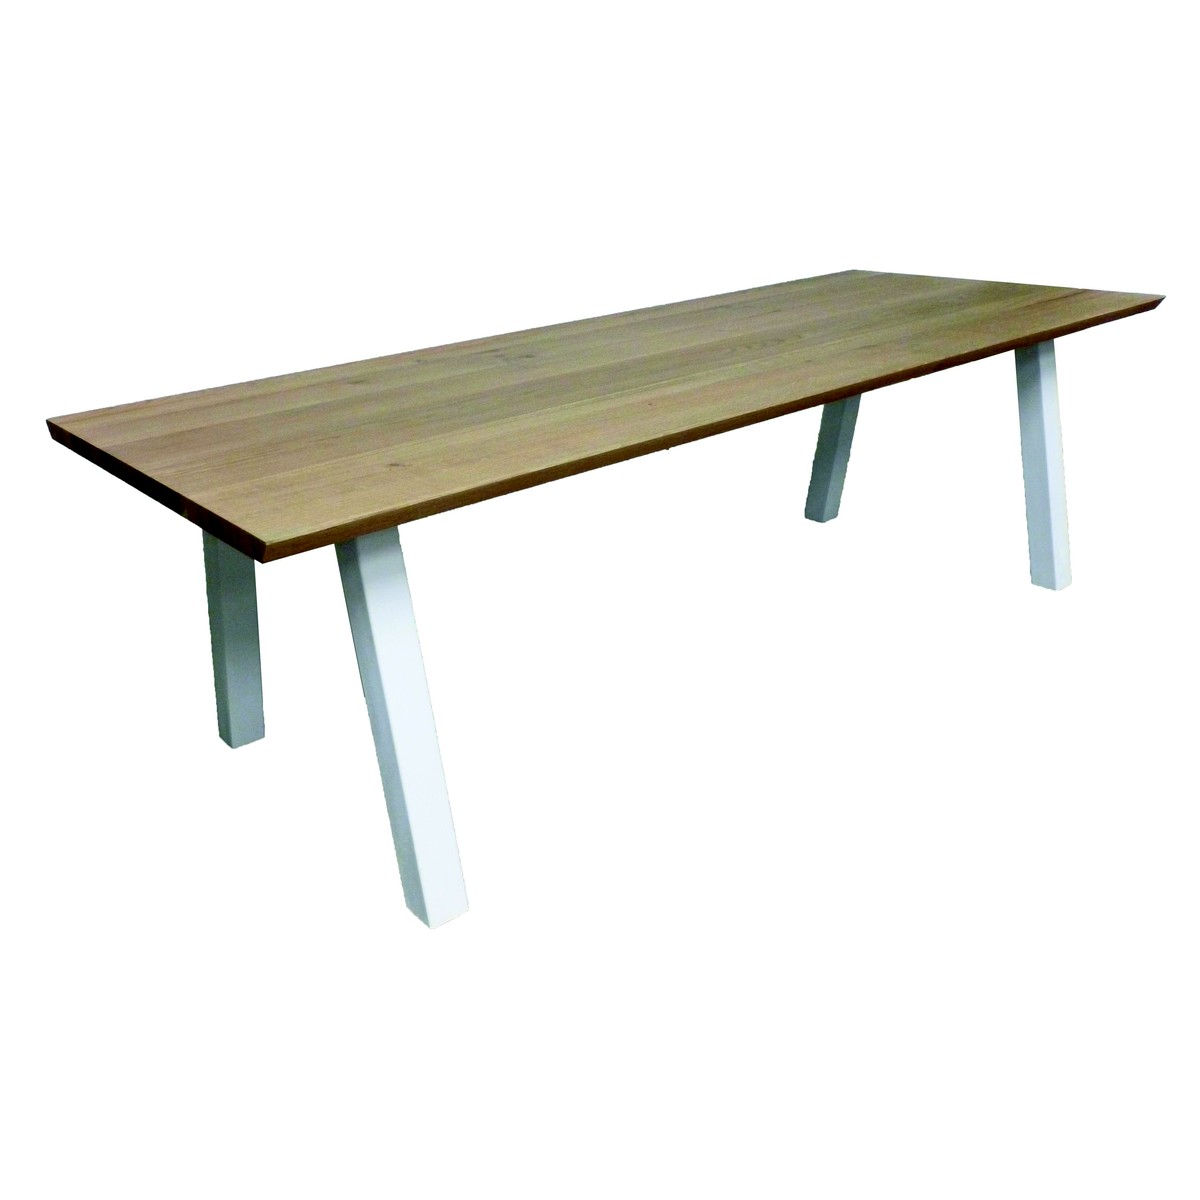   Table de bar Otys Seven rectangulaire  160x100x110cm